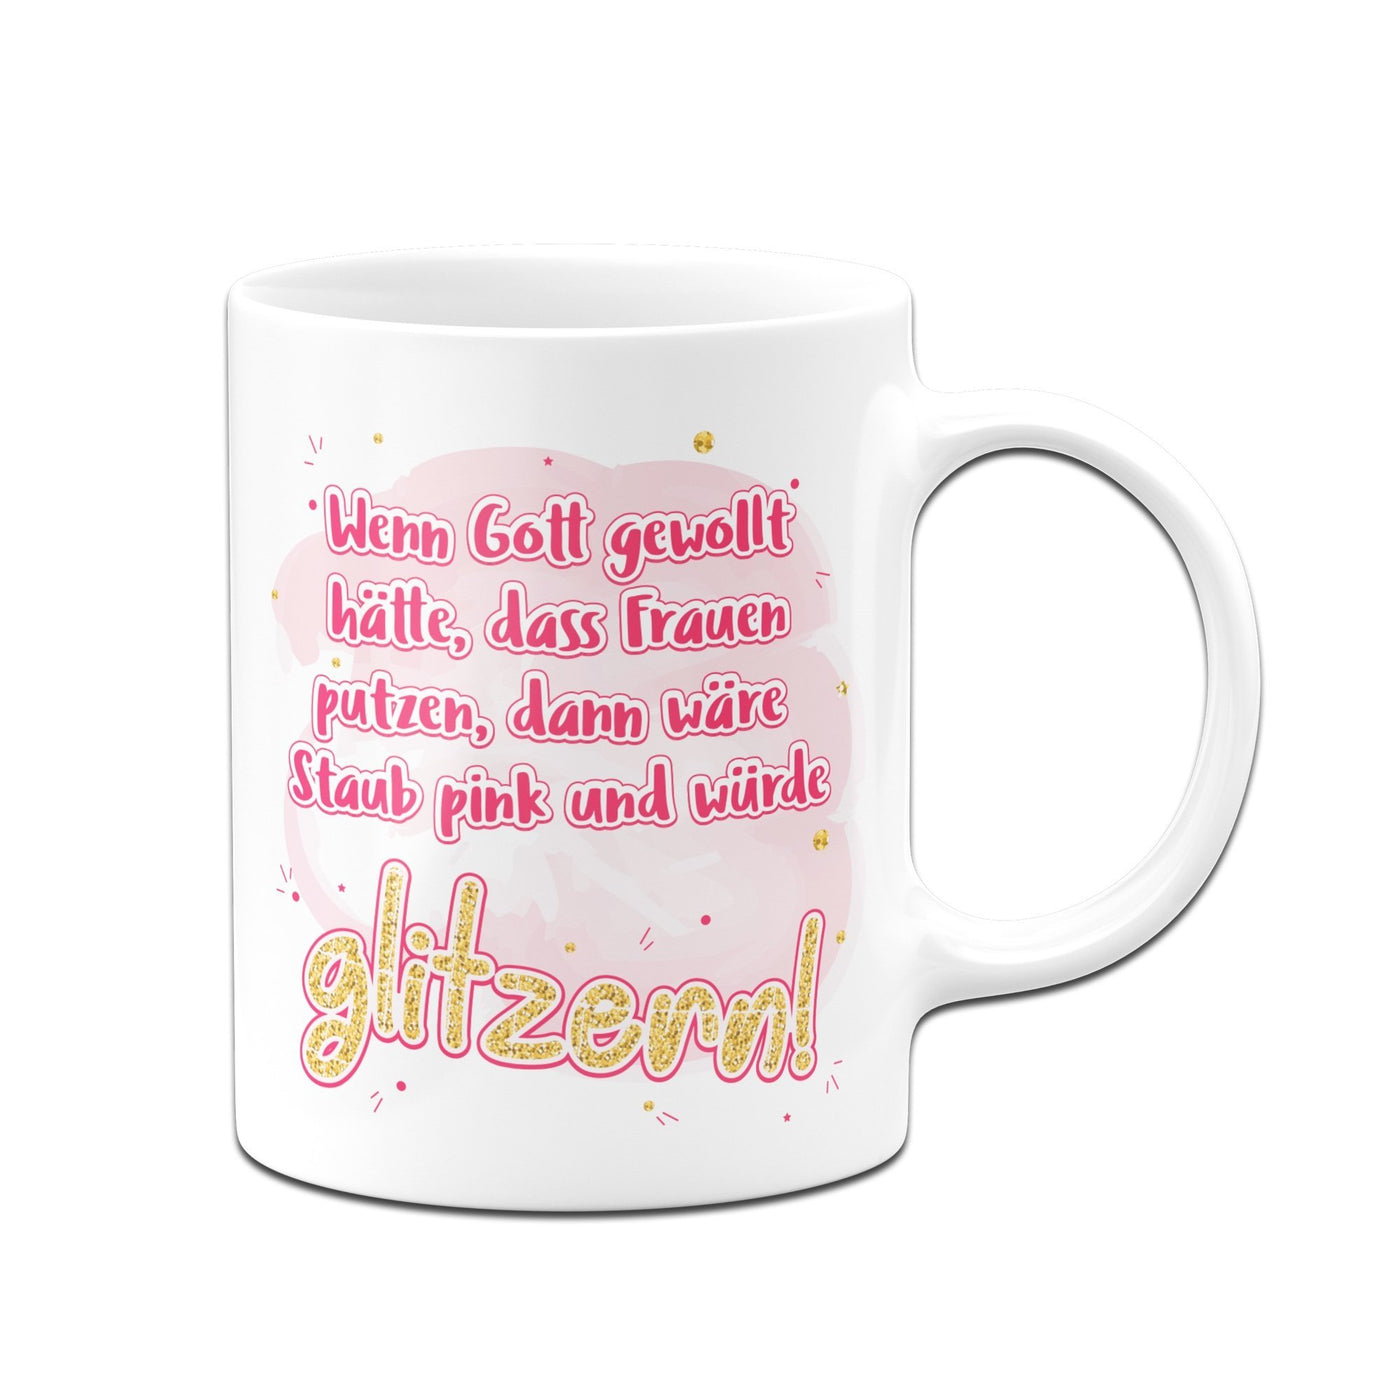 Bild: Tasse - Wenn Gott gewollt hätte, das Frauen putzen Geschenkidee